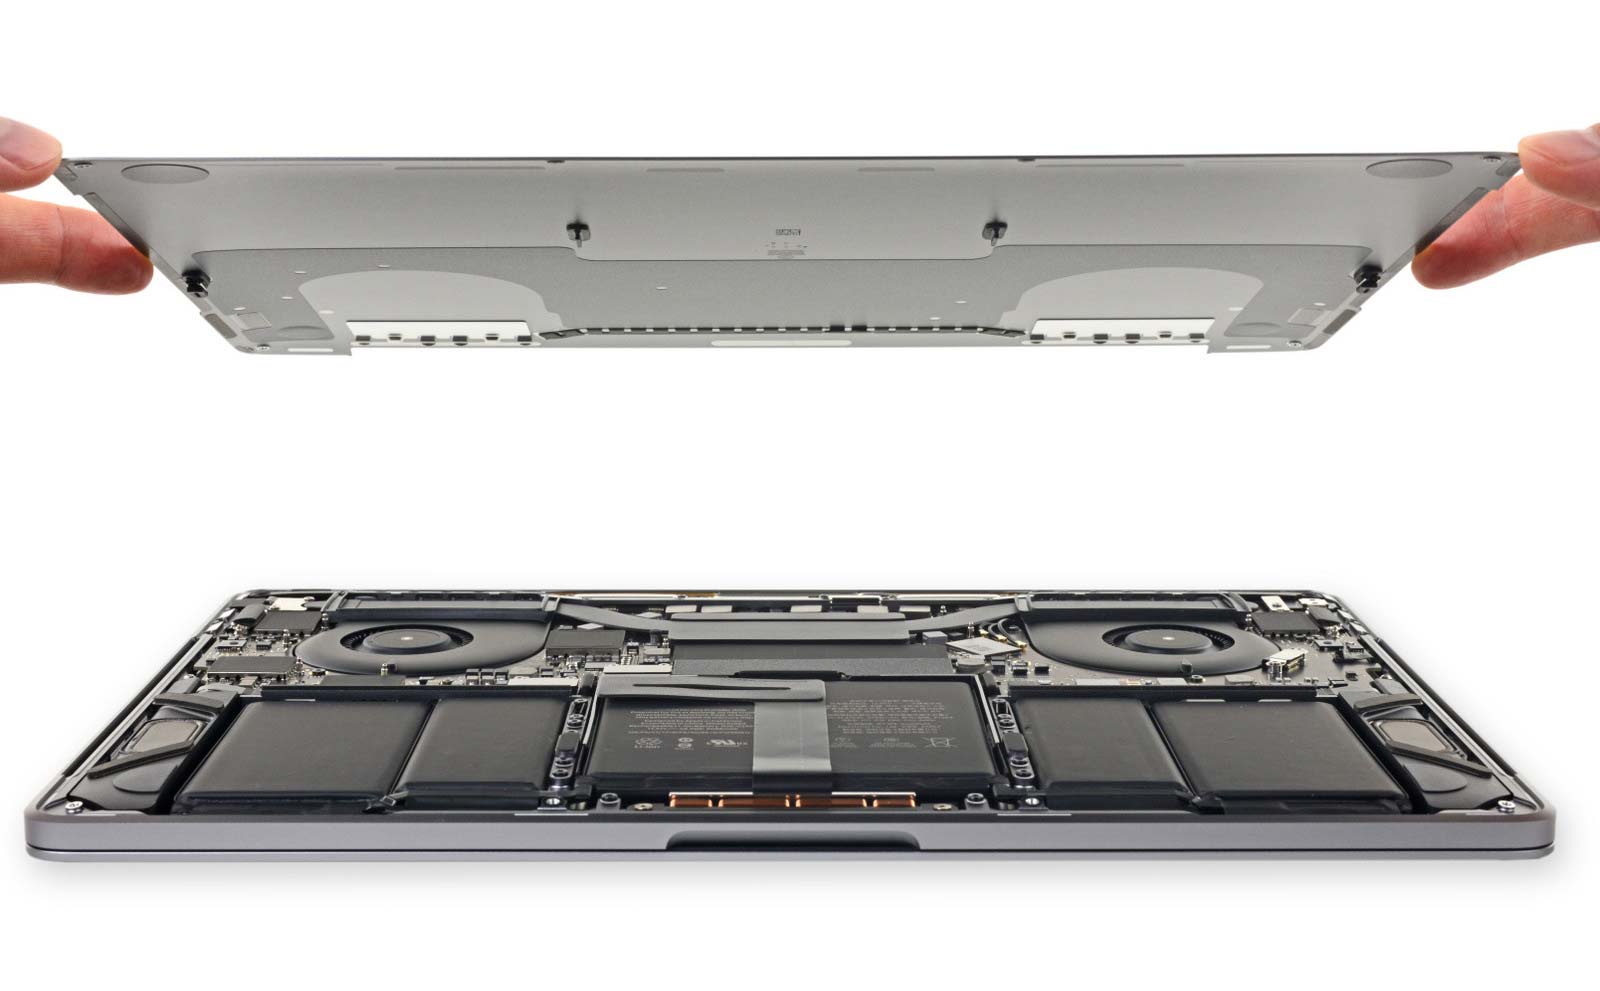 MacBook Pro 2018 có pin và loa lớn hơn, SSD vẫn hàn chết, cục sạc mới, 1/10 điểm iFixit